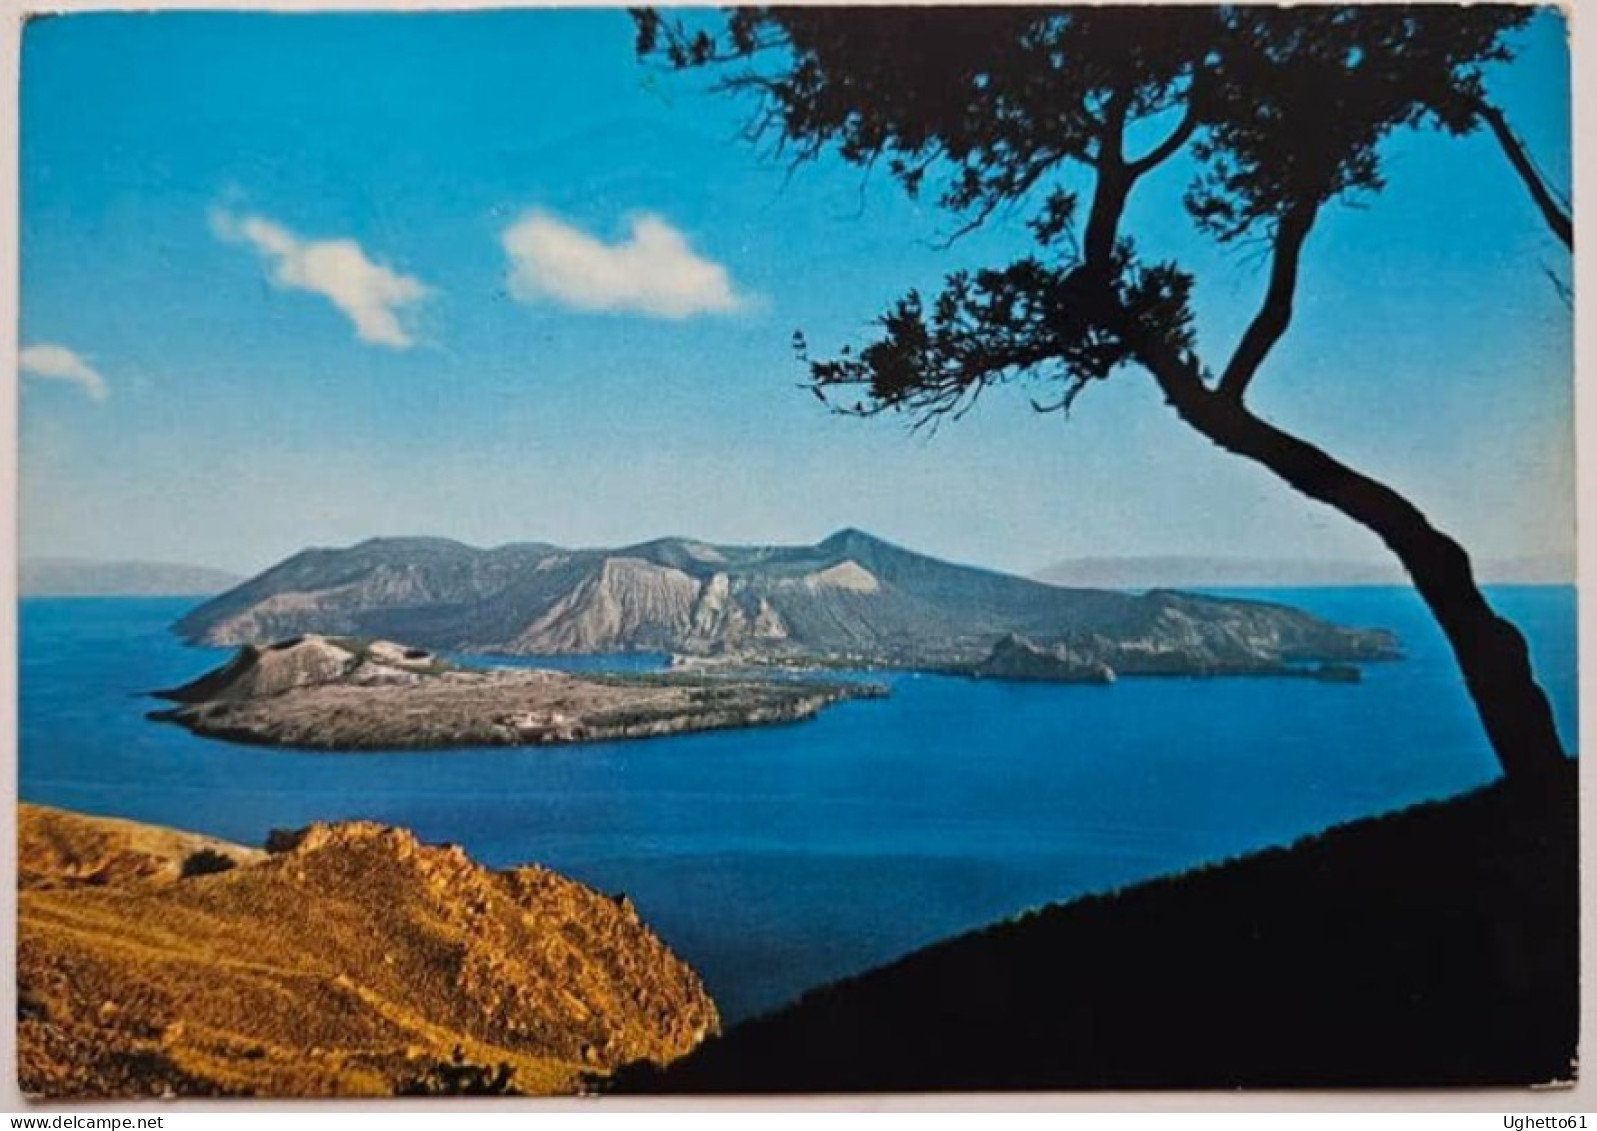 Cartolina Vulcano Con Annullo Speciale Prima Ascensione Della Canna Di Filicudi Isole Eolie 1972- Centenario Parete Est - Alpinisme